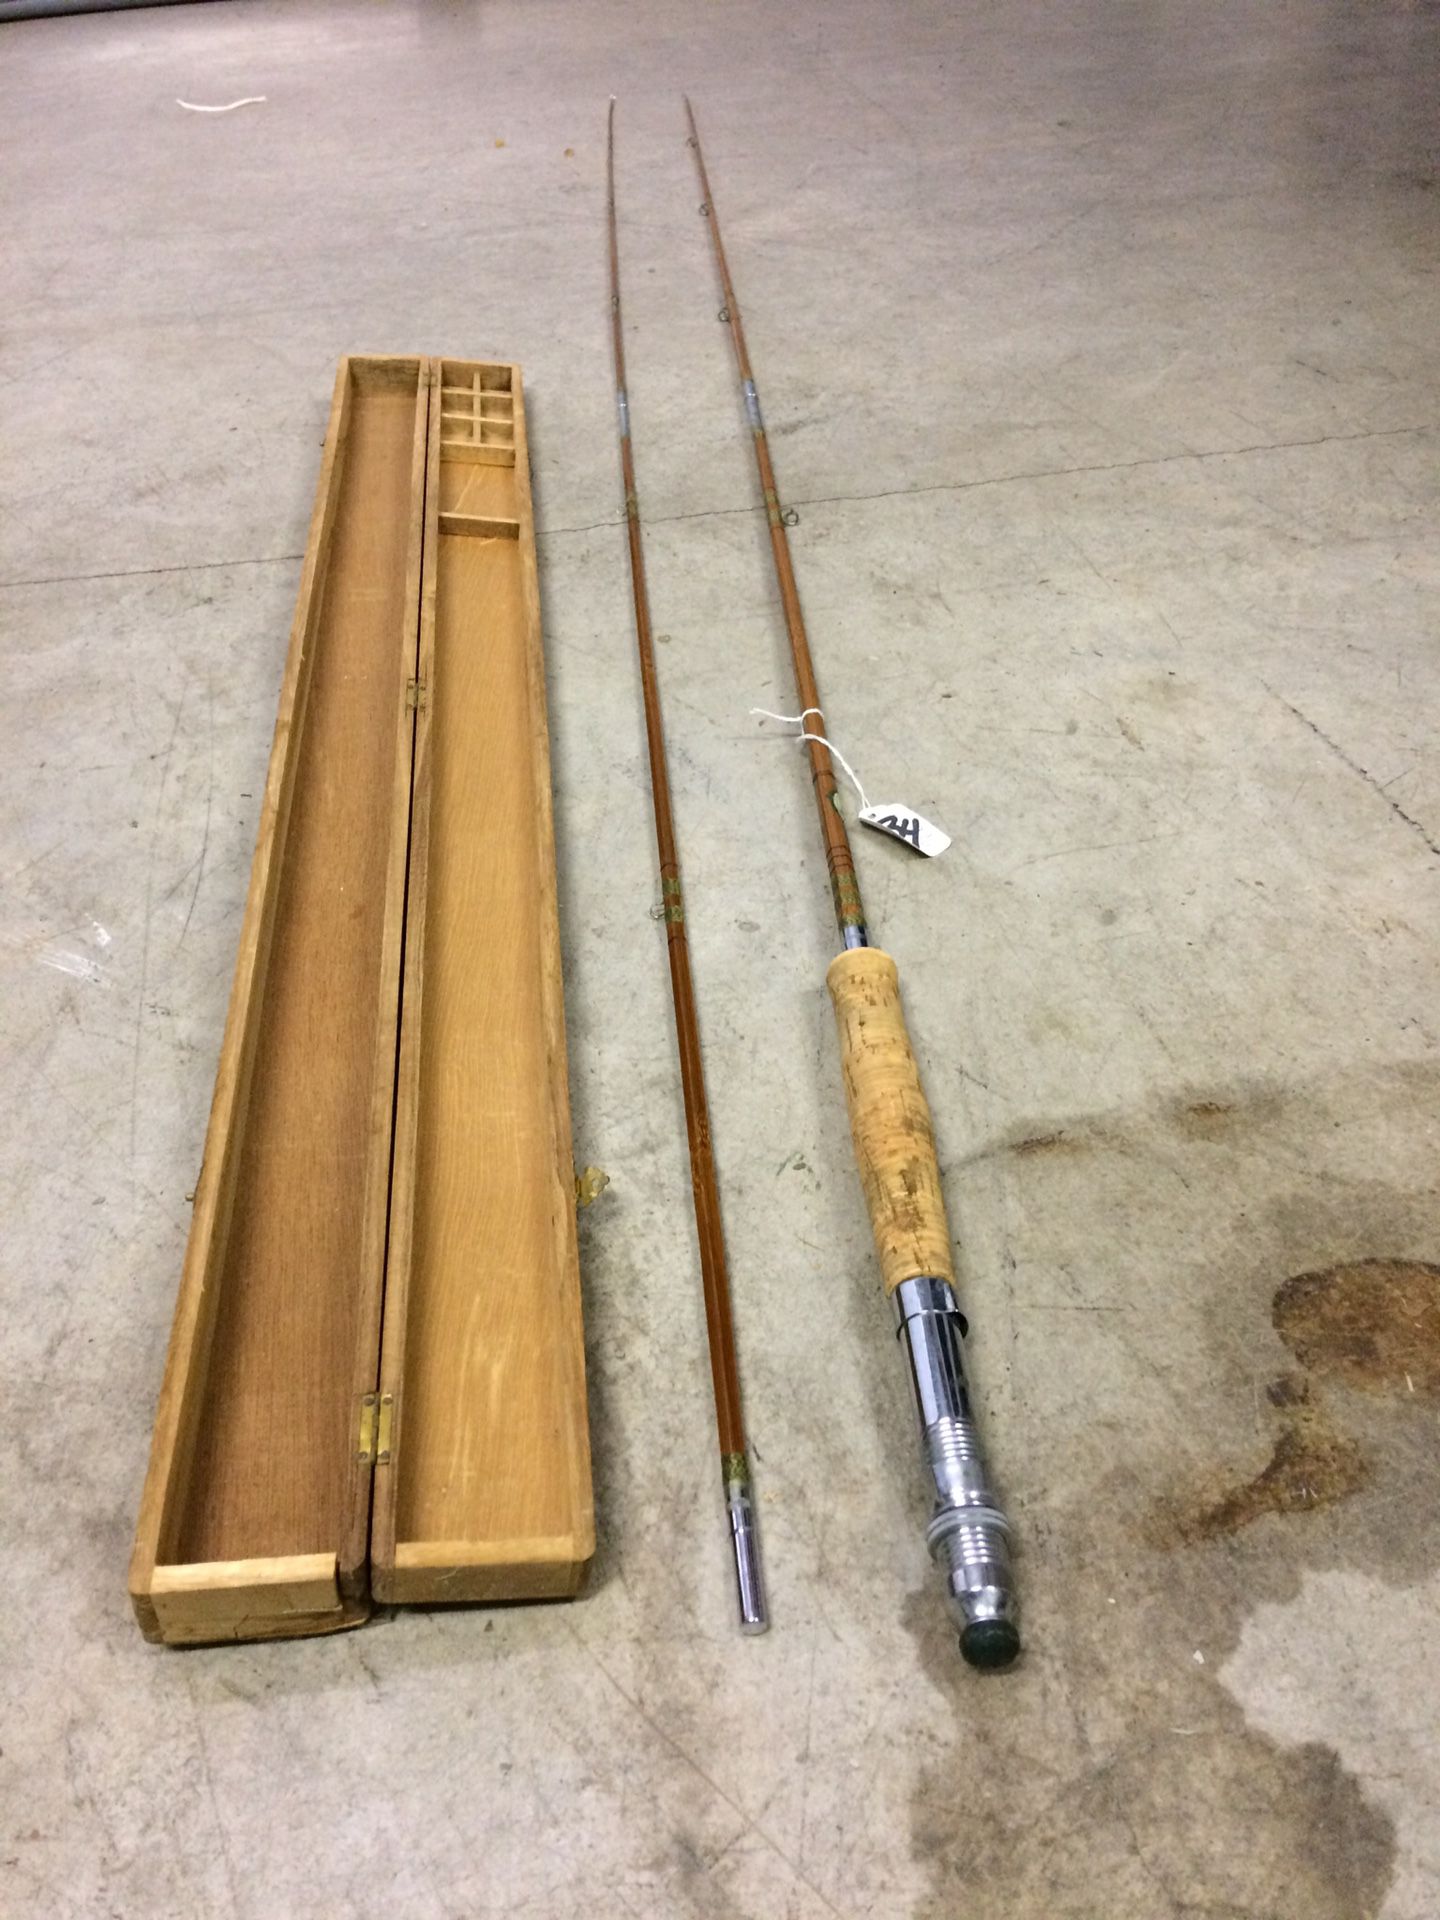 Vintage Kiraku & Co. GRAMPUS Tamamushi 5-pc Split Bamboo Fly Fishing Rod  with wood box -Japan for Sale in San Antonio, TX - OfferUp